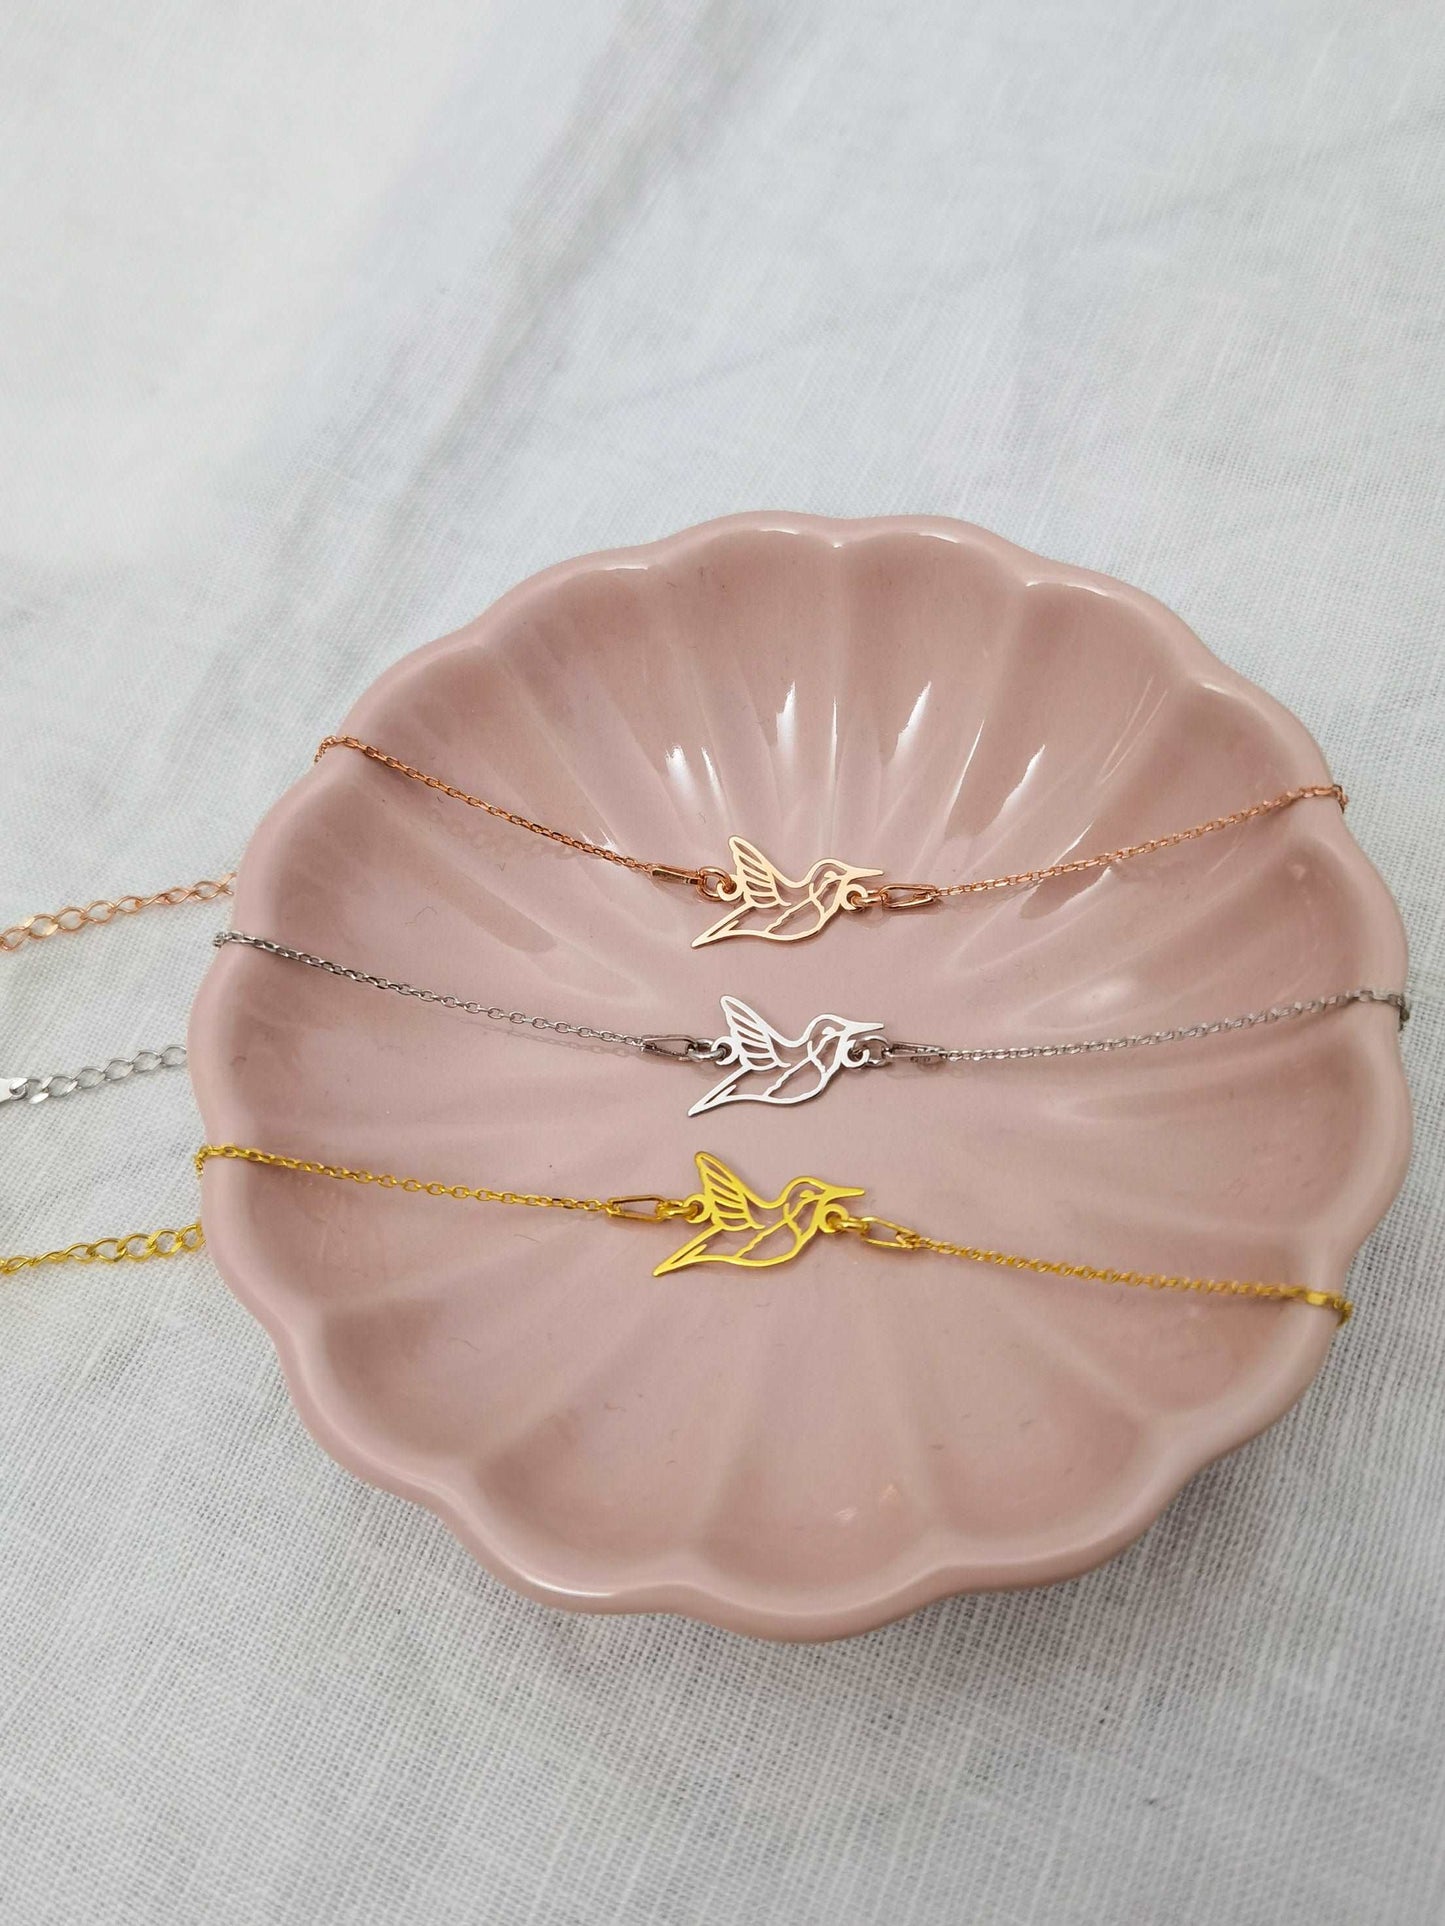 Kolibri Armband in gold, silber und roségold in rosaner Schmuckschale